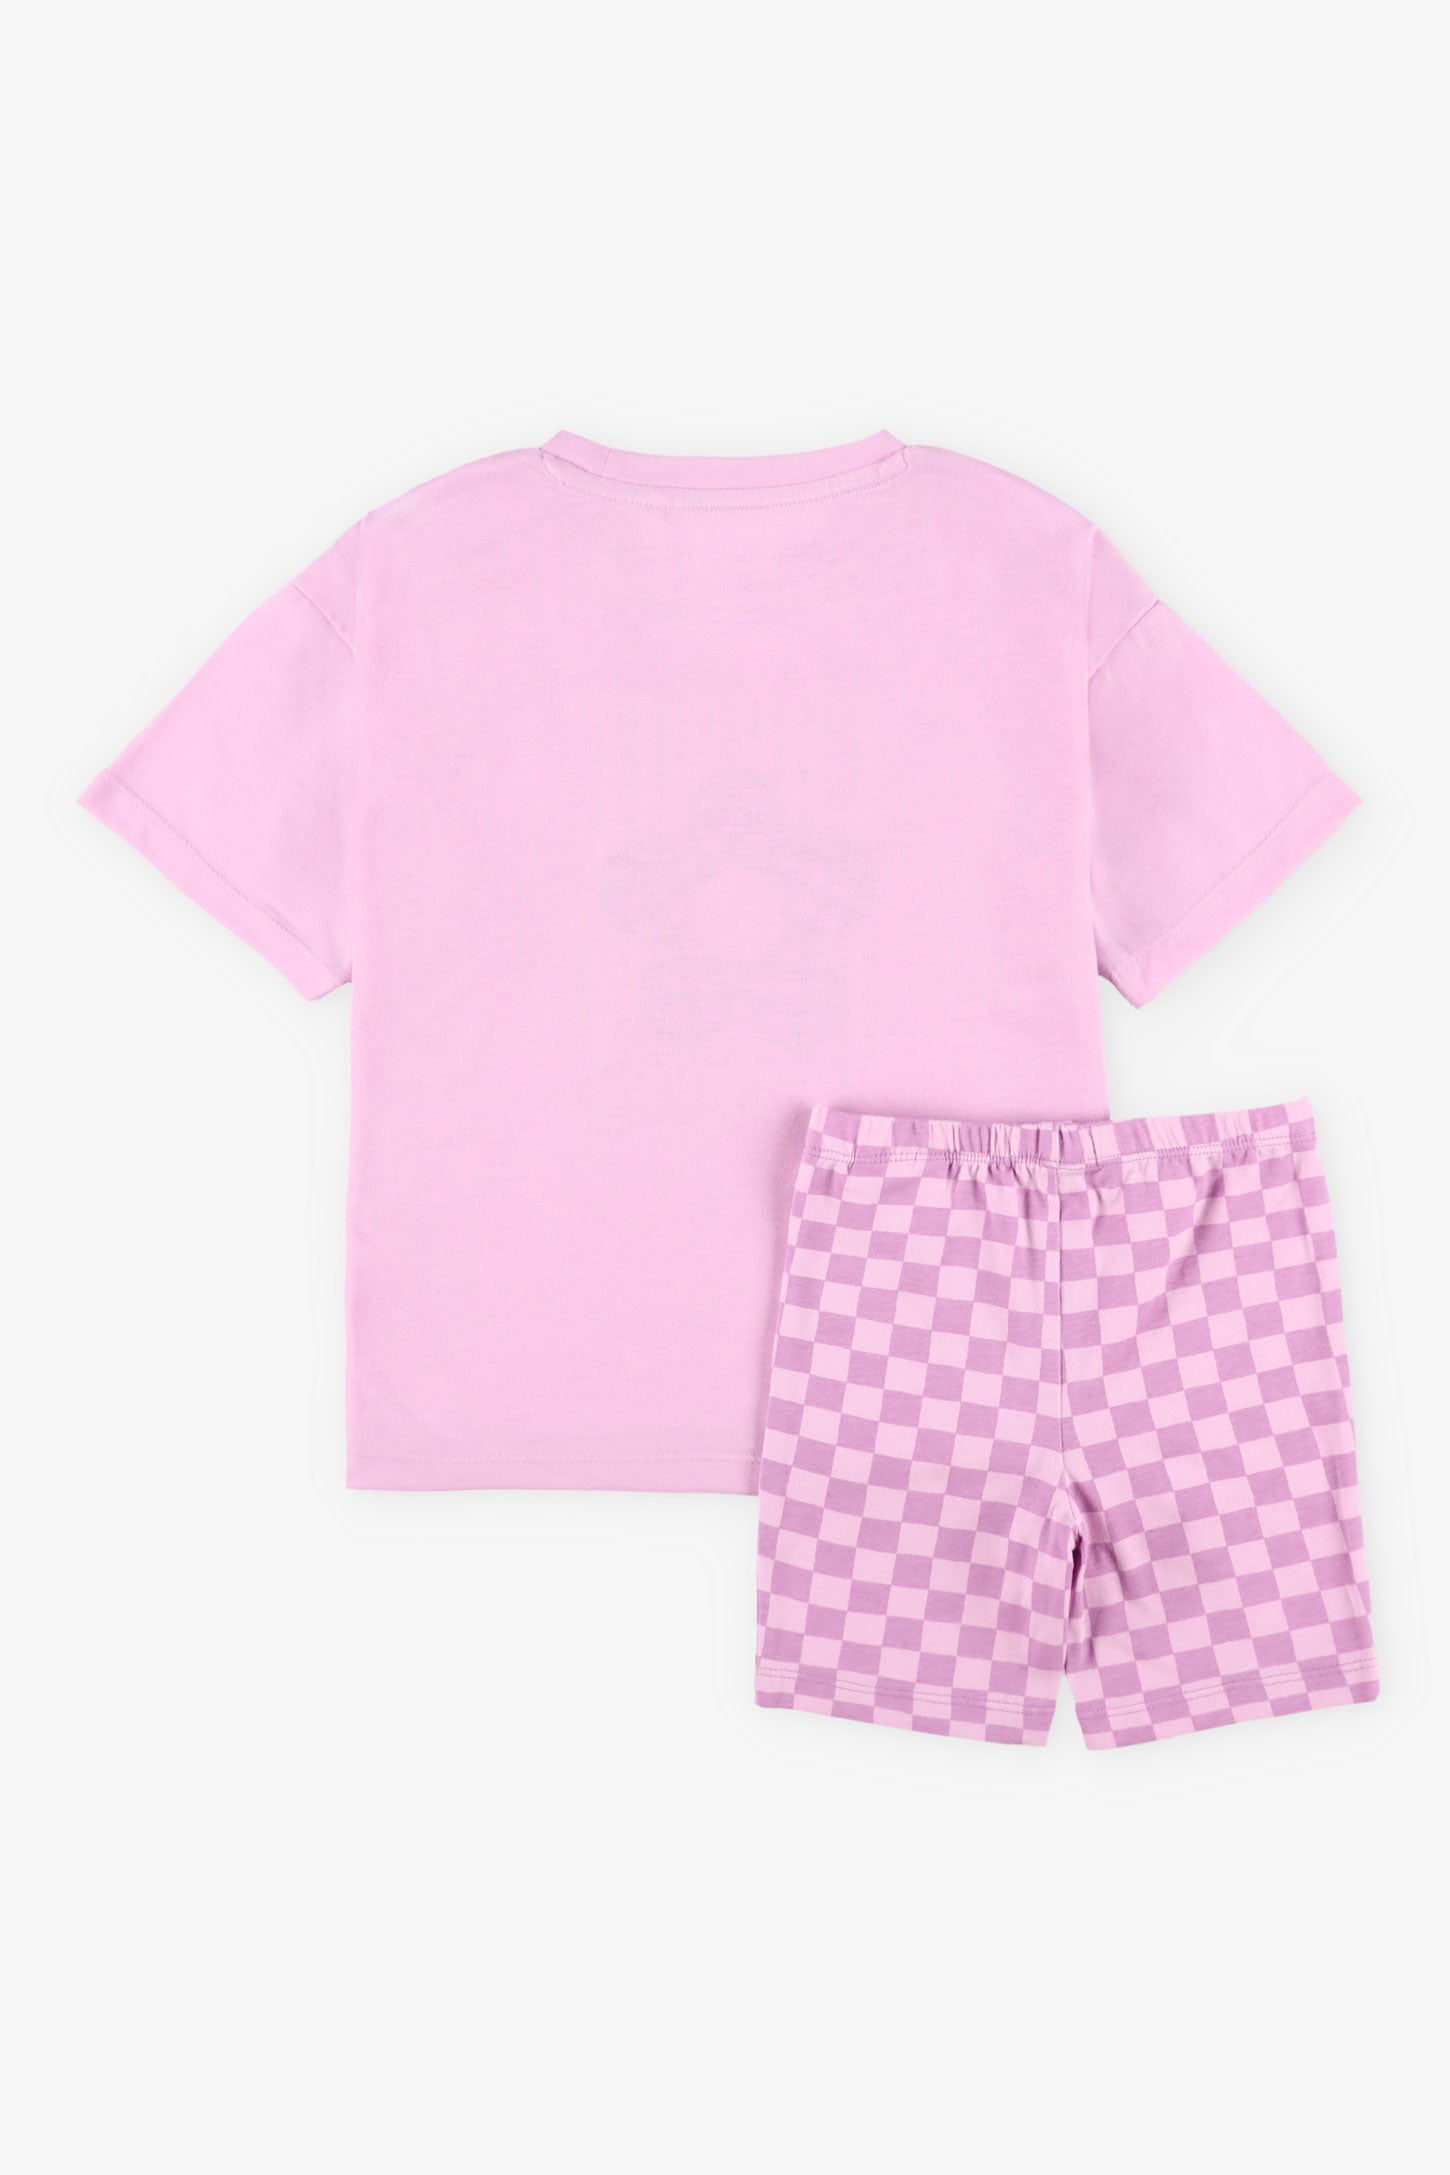 Pyjama 2-pièces, 2/35$ - Enfant fille && MAUVE